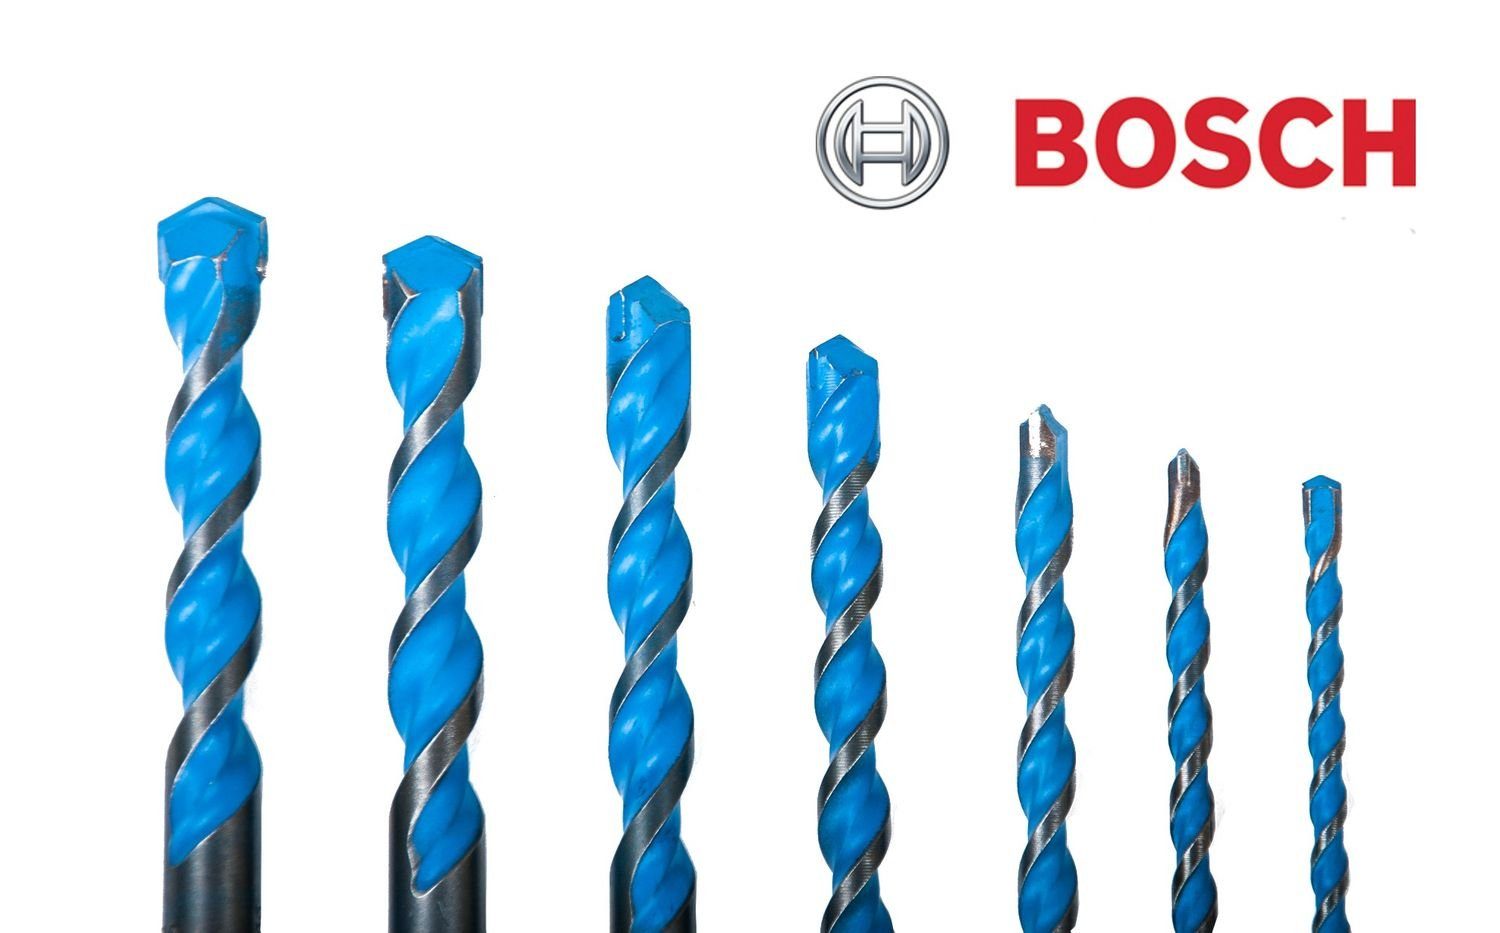 BOSCH Betonbohrer Bosch SDS Plus verschiedene Größen B8 Bohrer